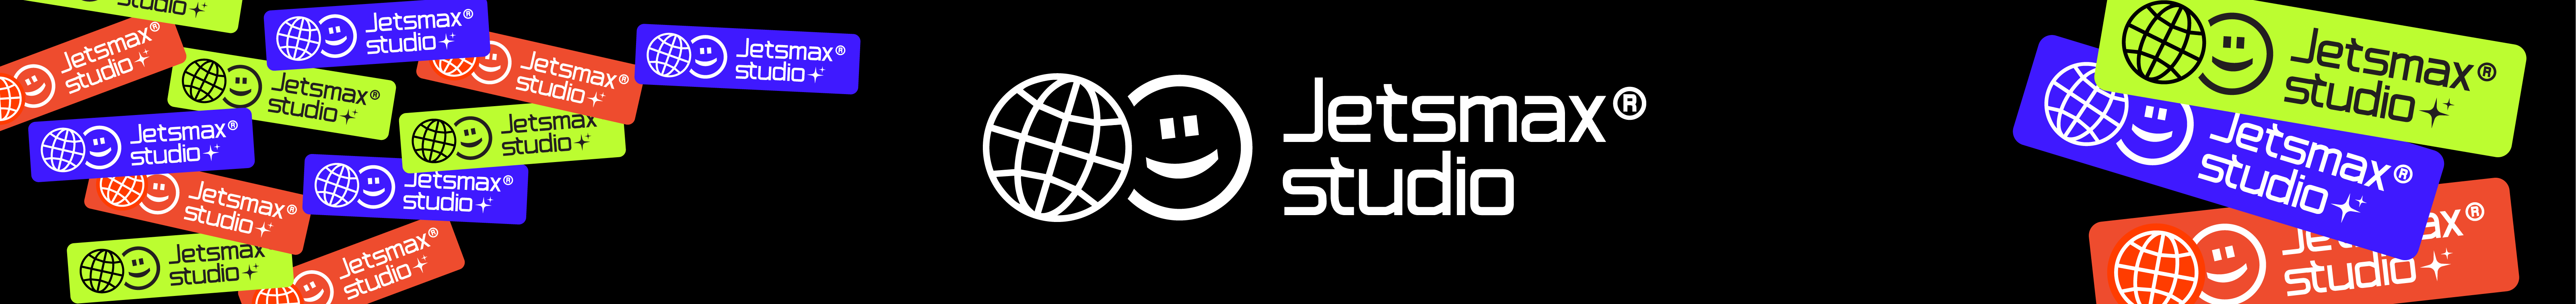 Banner profilu uživatele Jetsmax® Studio